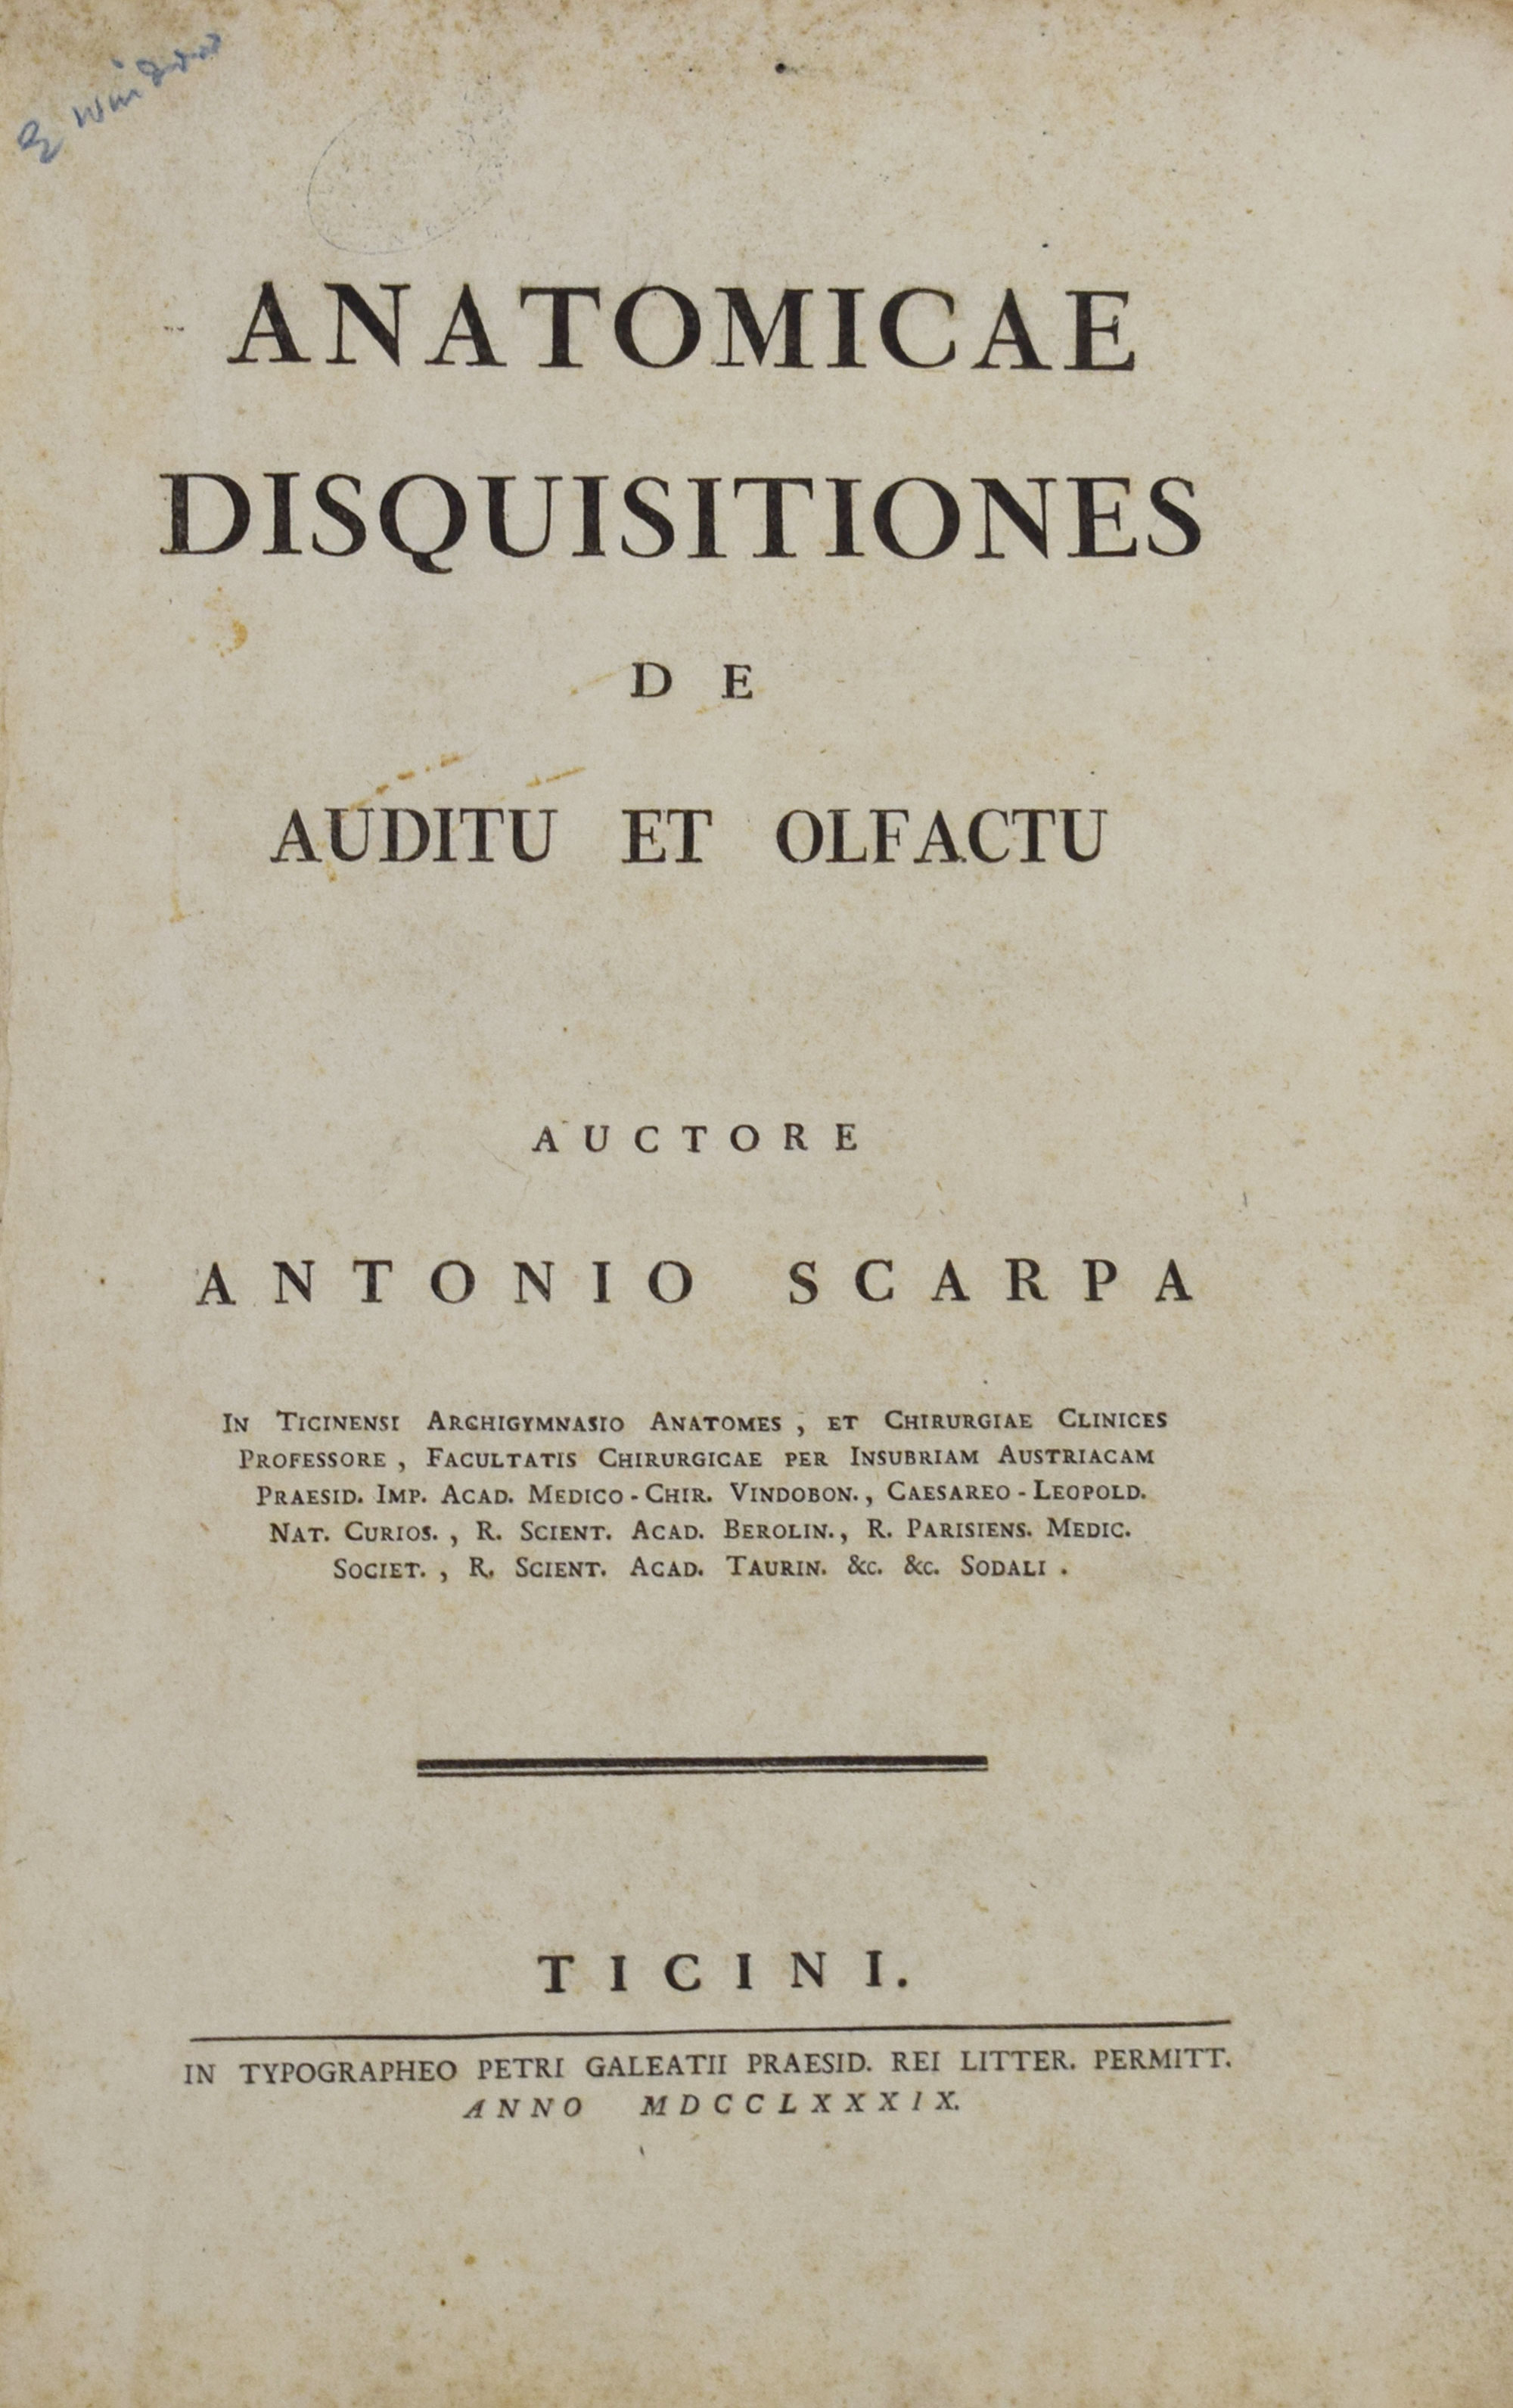 Anatomicae Disquisitiones de Auditu et Olfactu